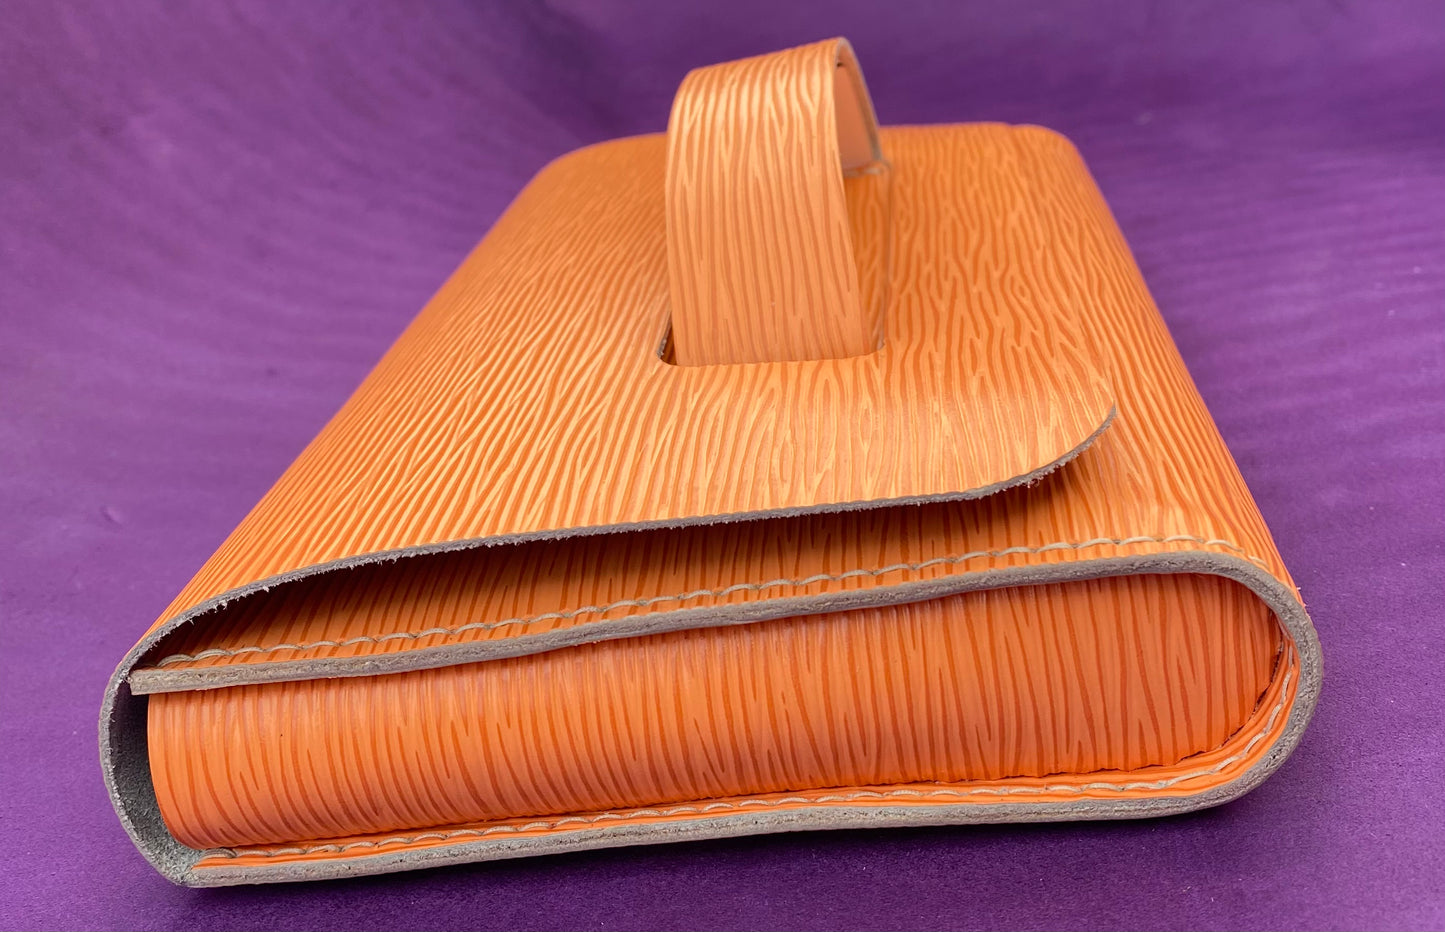 Handmade Epi Leather Clutch/Envelope Bag